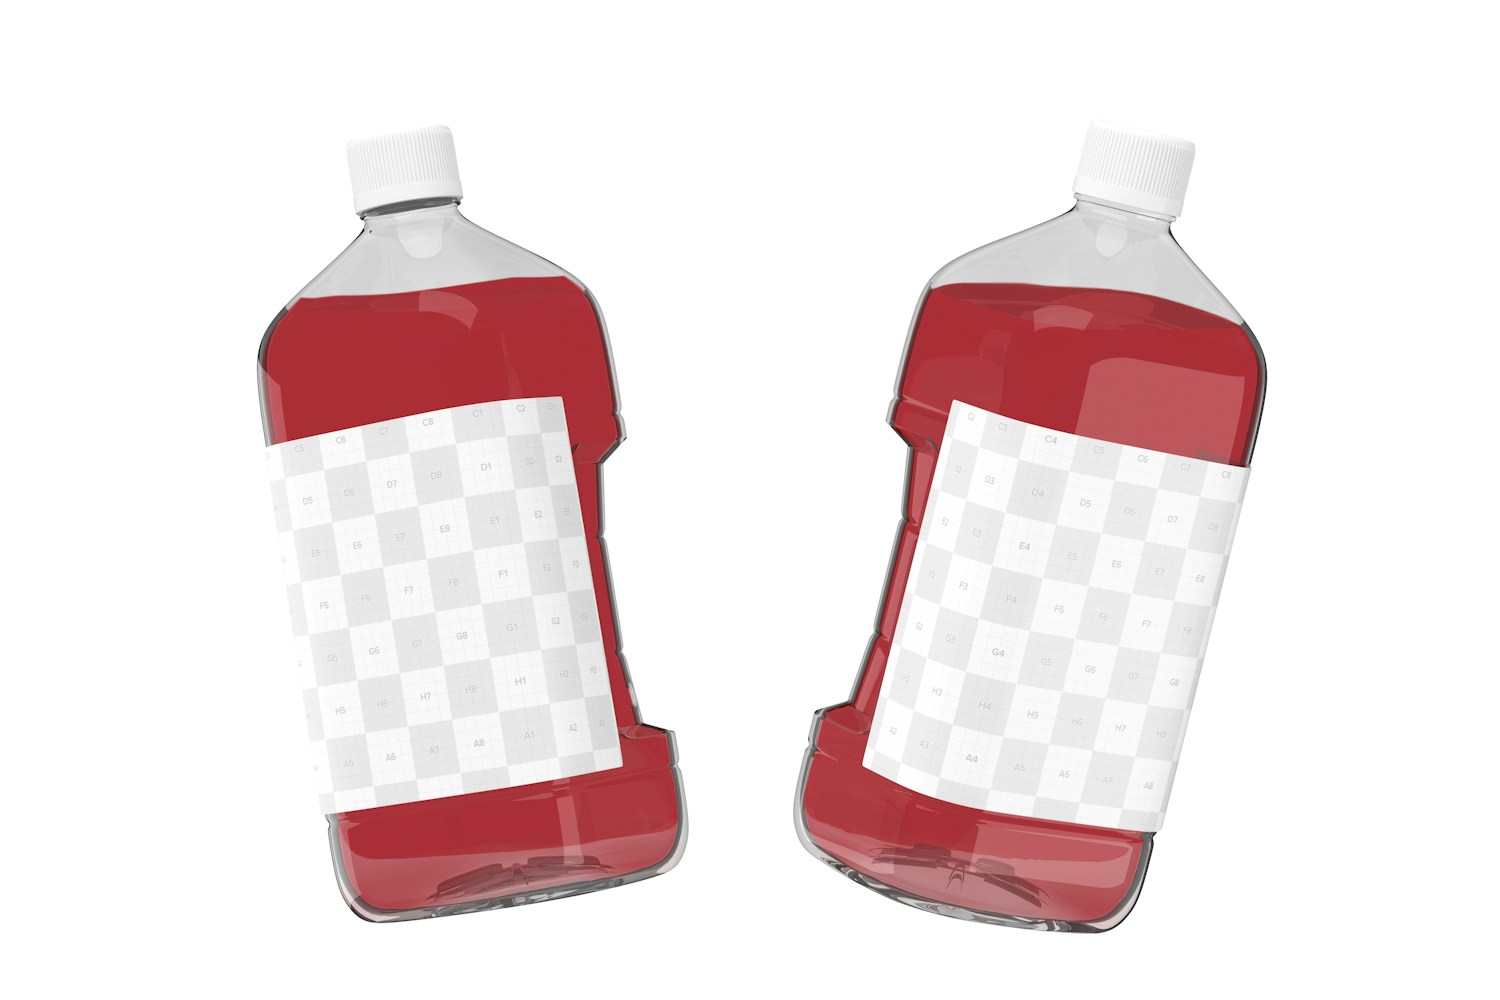 64 oz Clear PET Juice Bottles Mockup, Floating